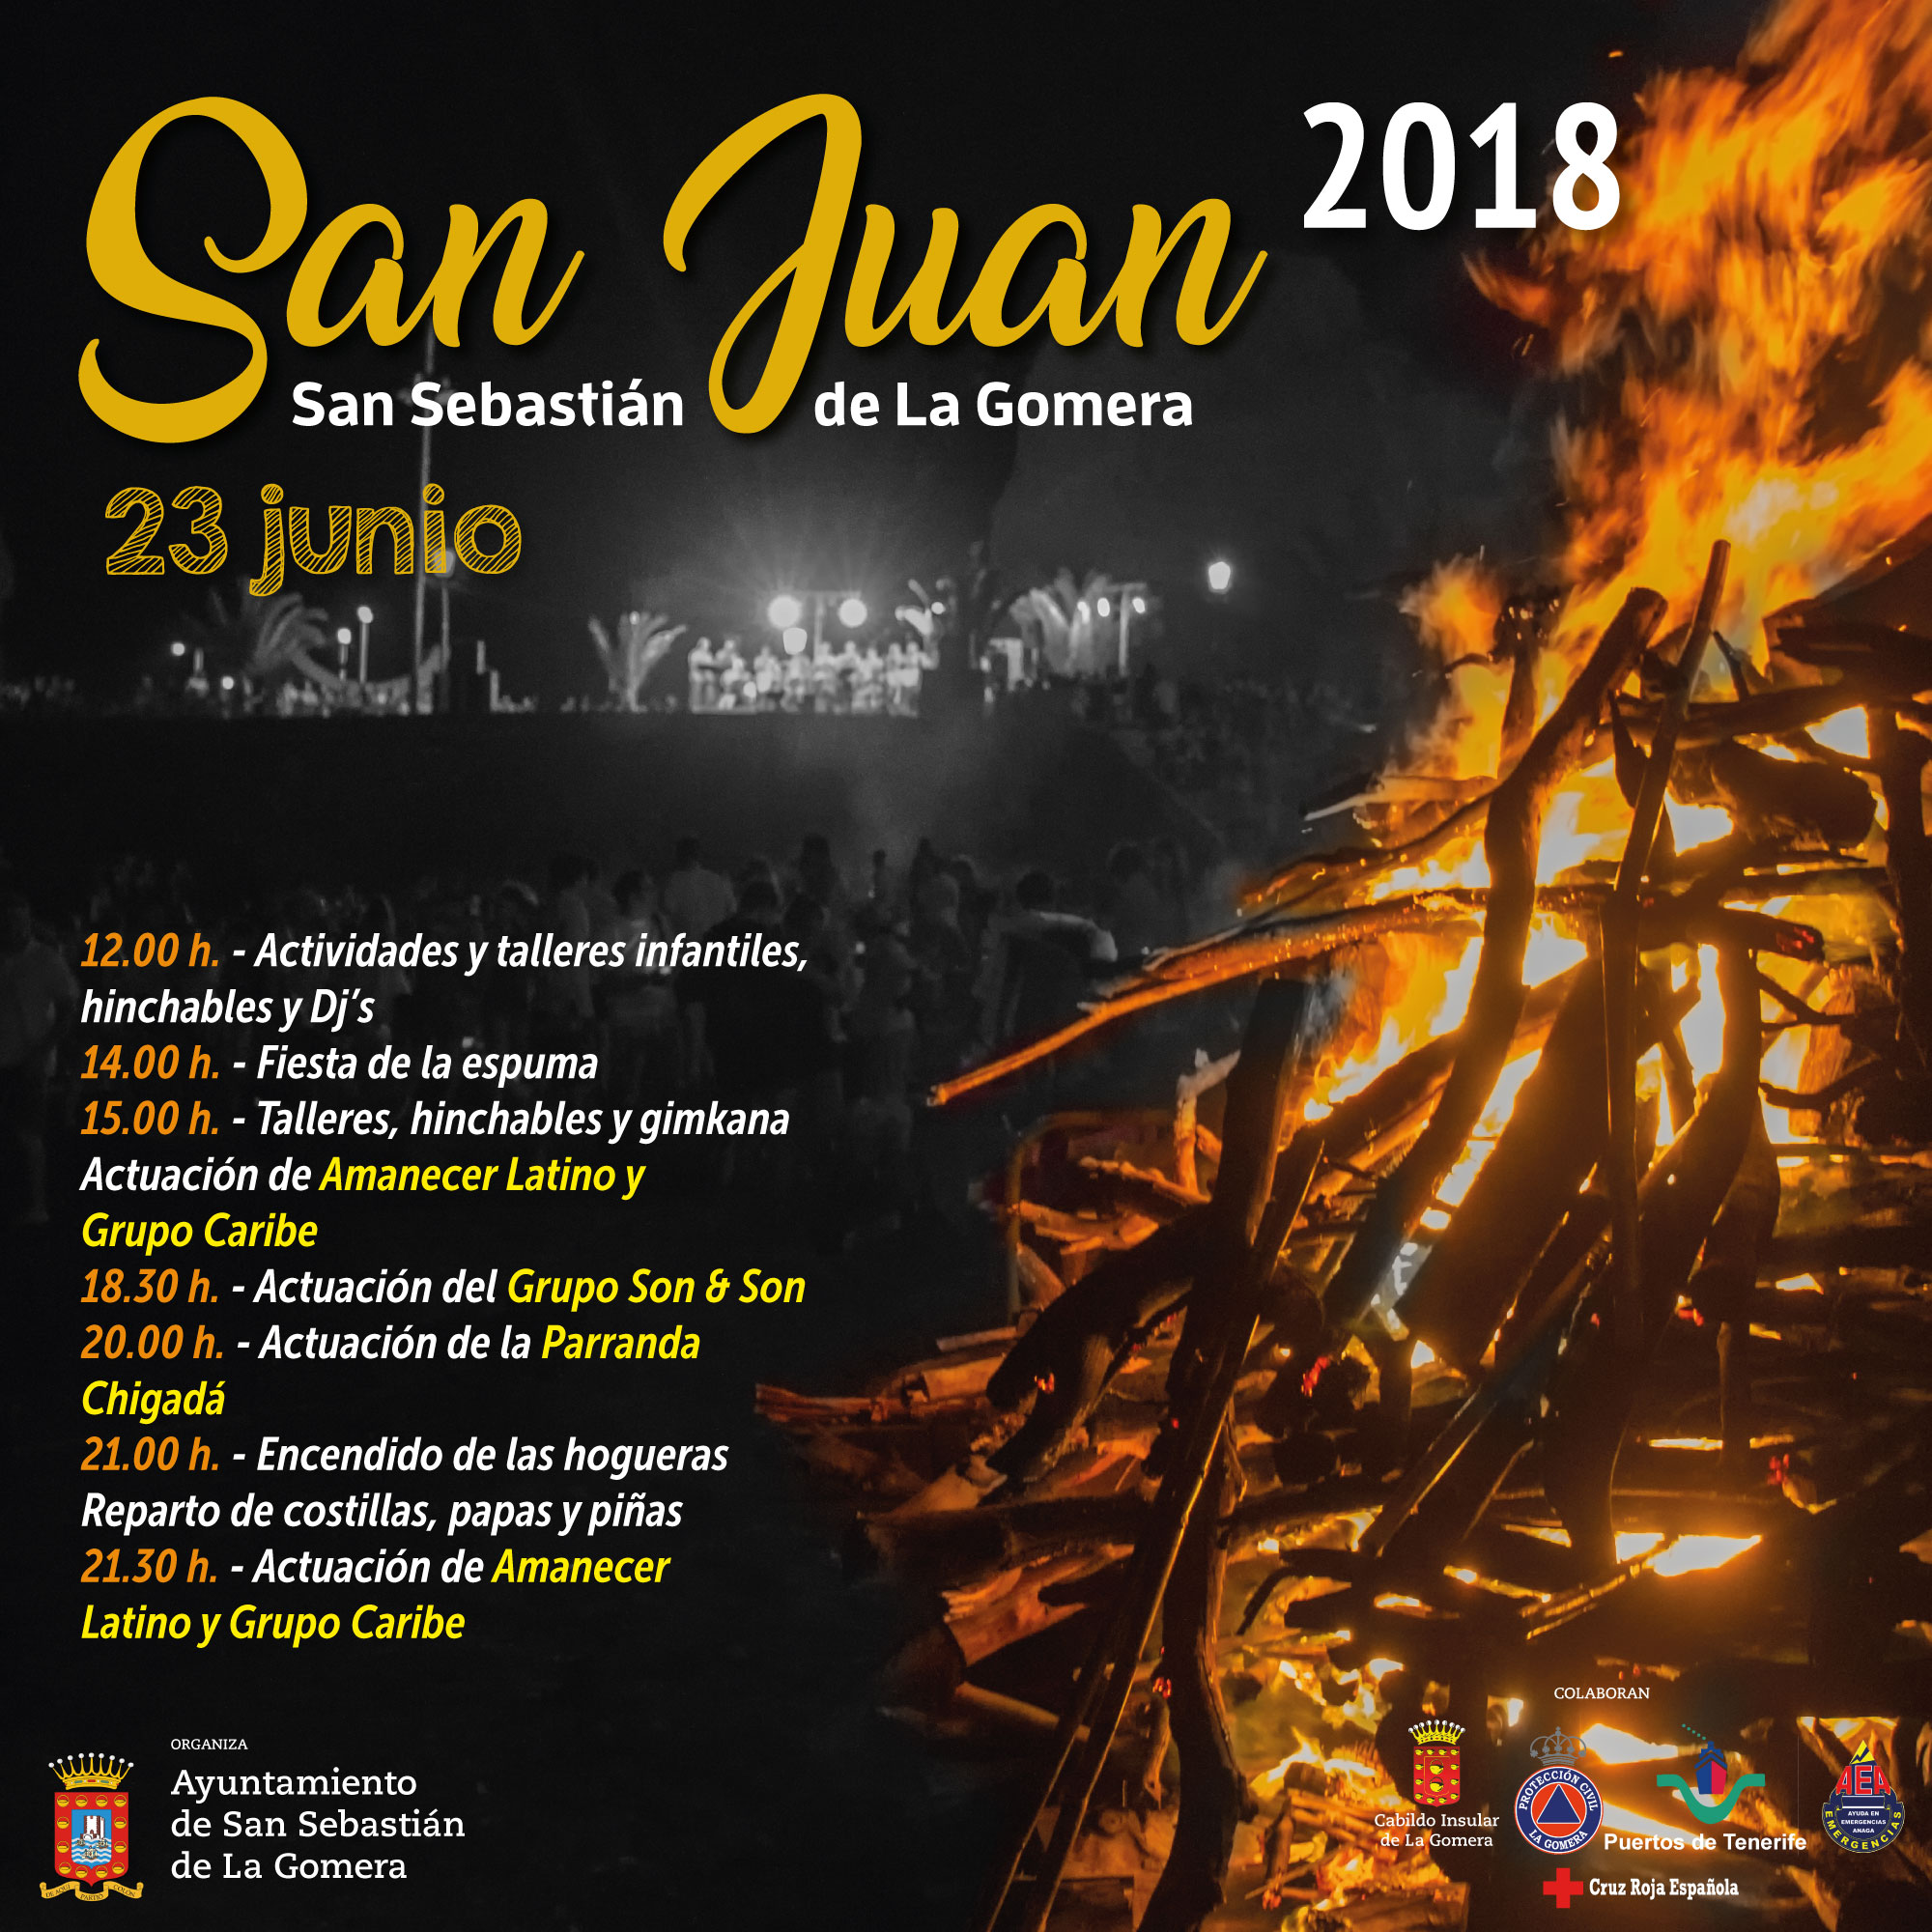 Una veintena de hogueras iluminarán la noche de San Juan en San Sebastián La Gomera - Ayuntamiento de San Sebastián de La Gomera